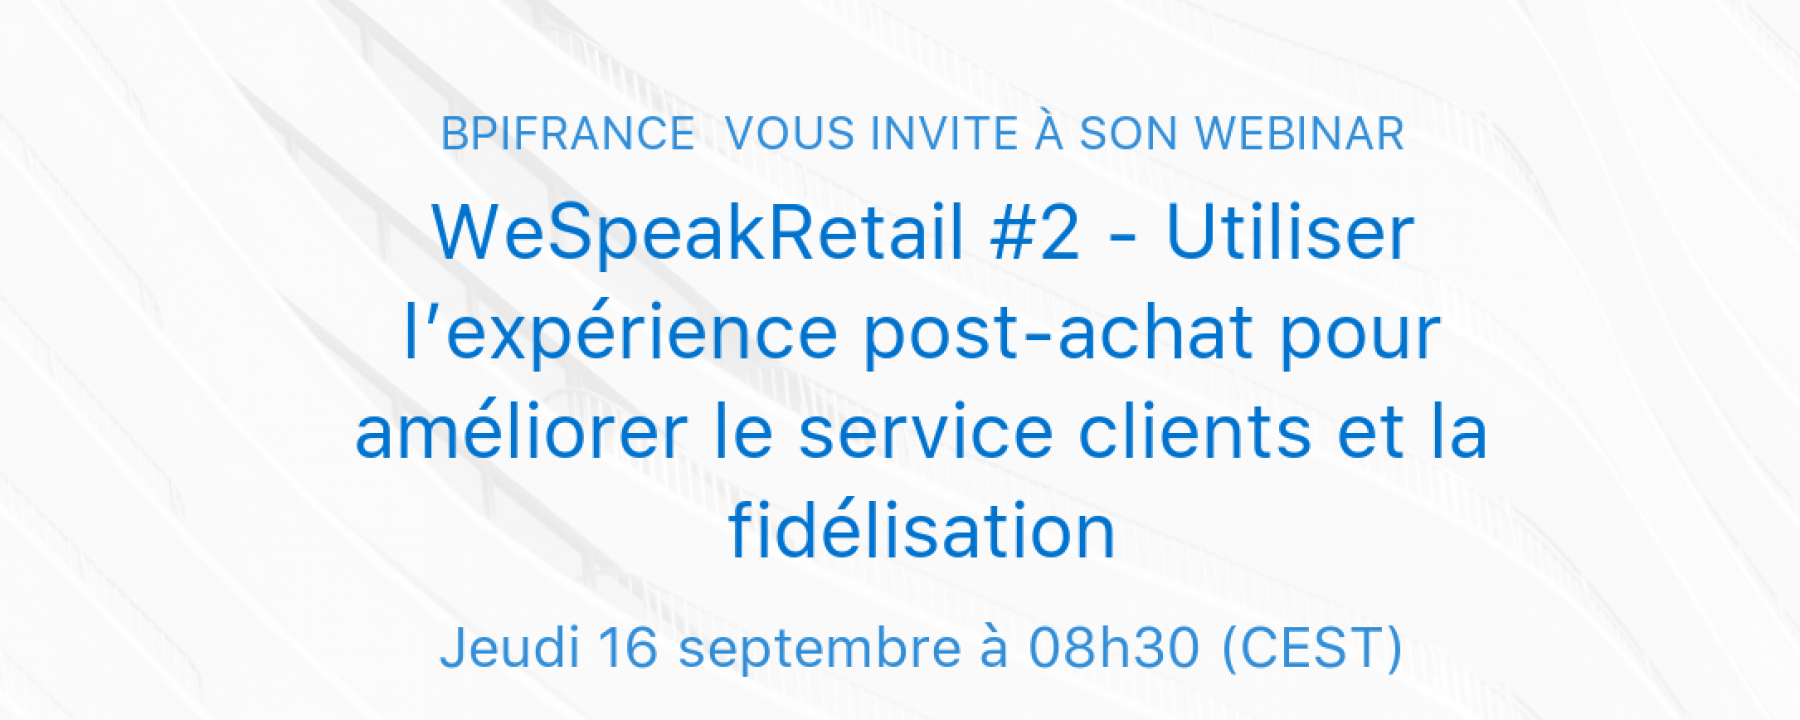 WeSpeakRetail #2 - Utiliser l’expérience post-achat pour améliorer le service clients et la fidélisation le 16 septembre 2021 